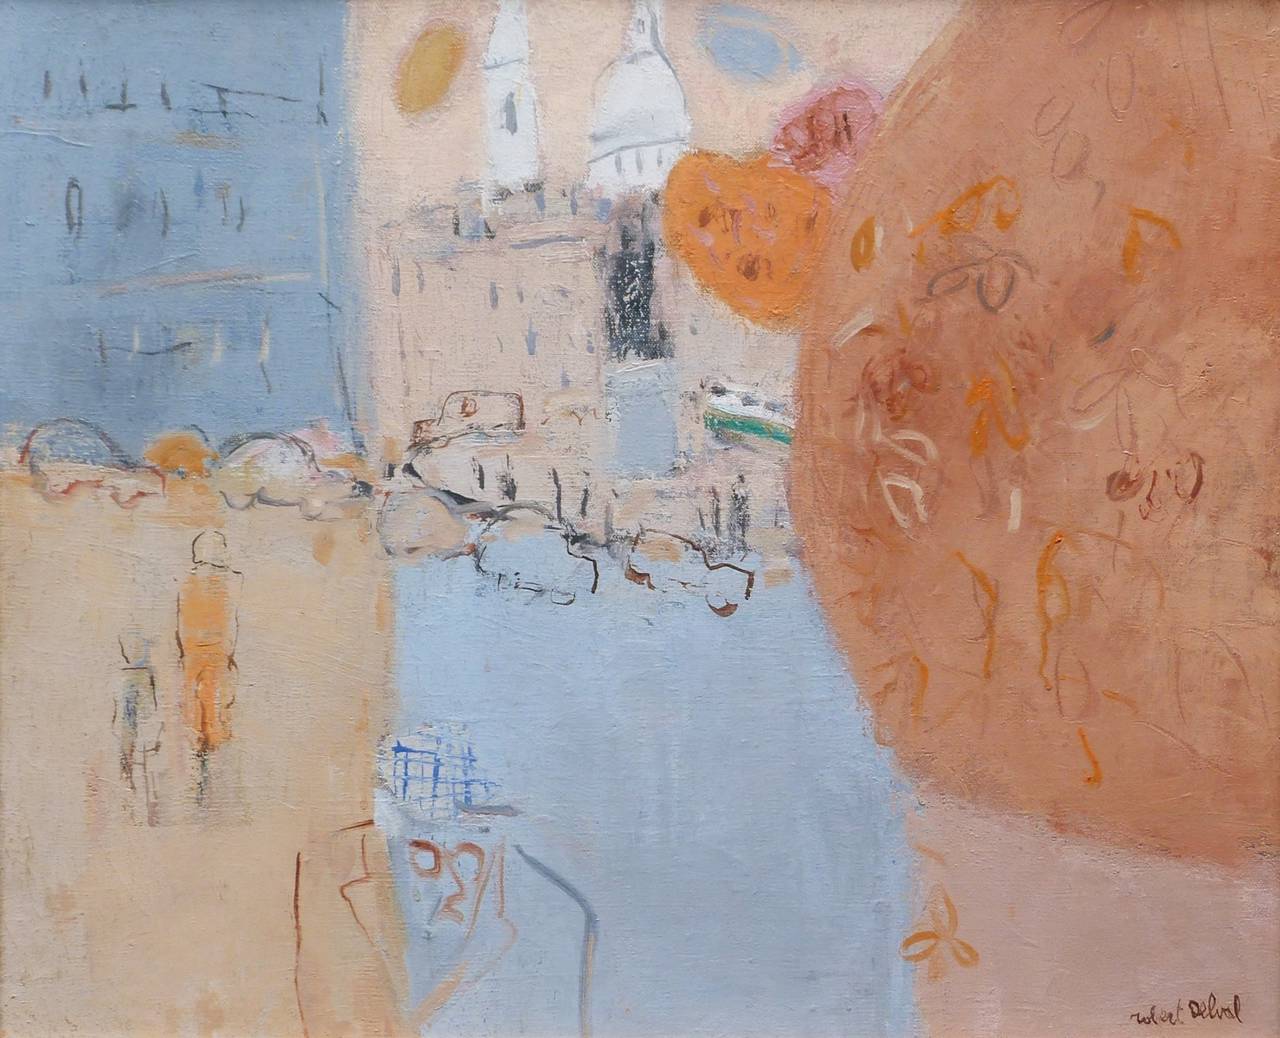 La Place de Clichy - Painting by Robert DELVAL